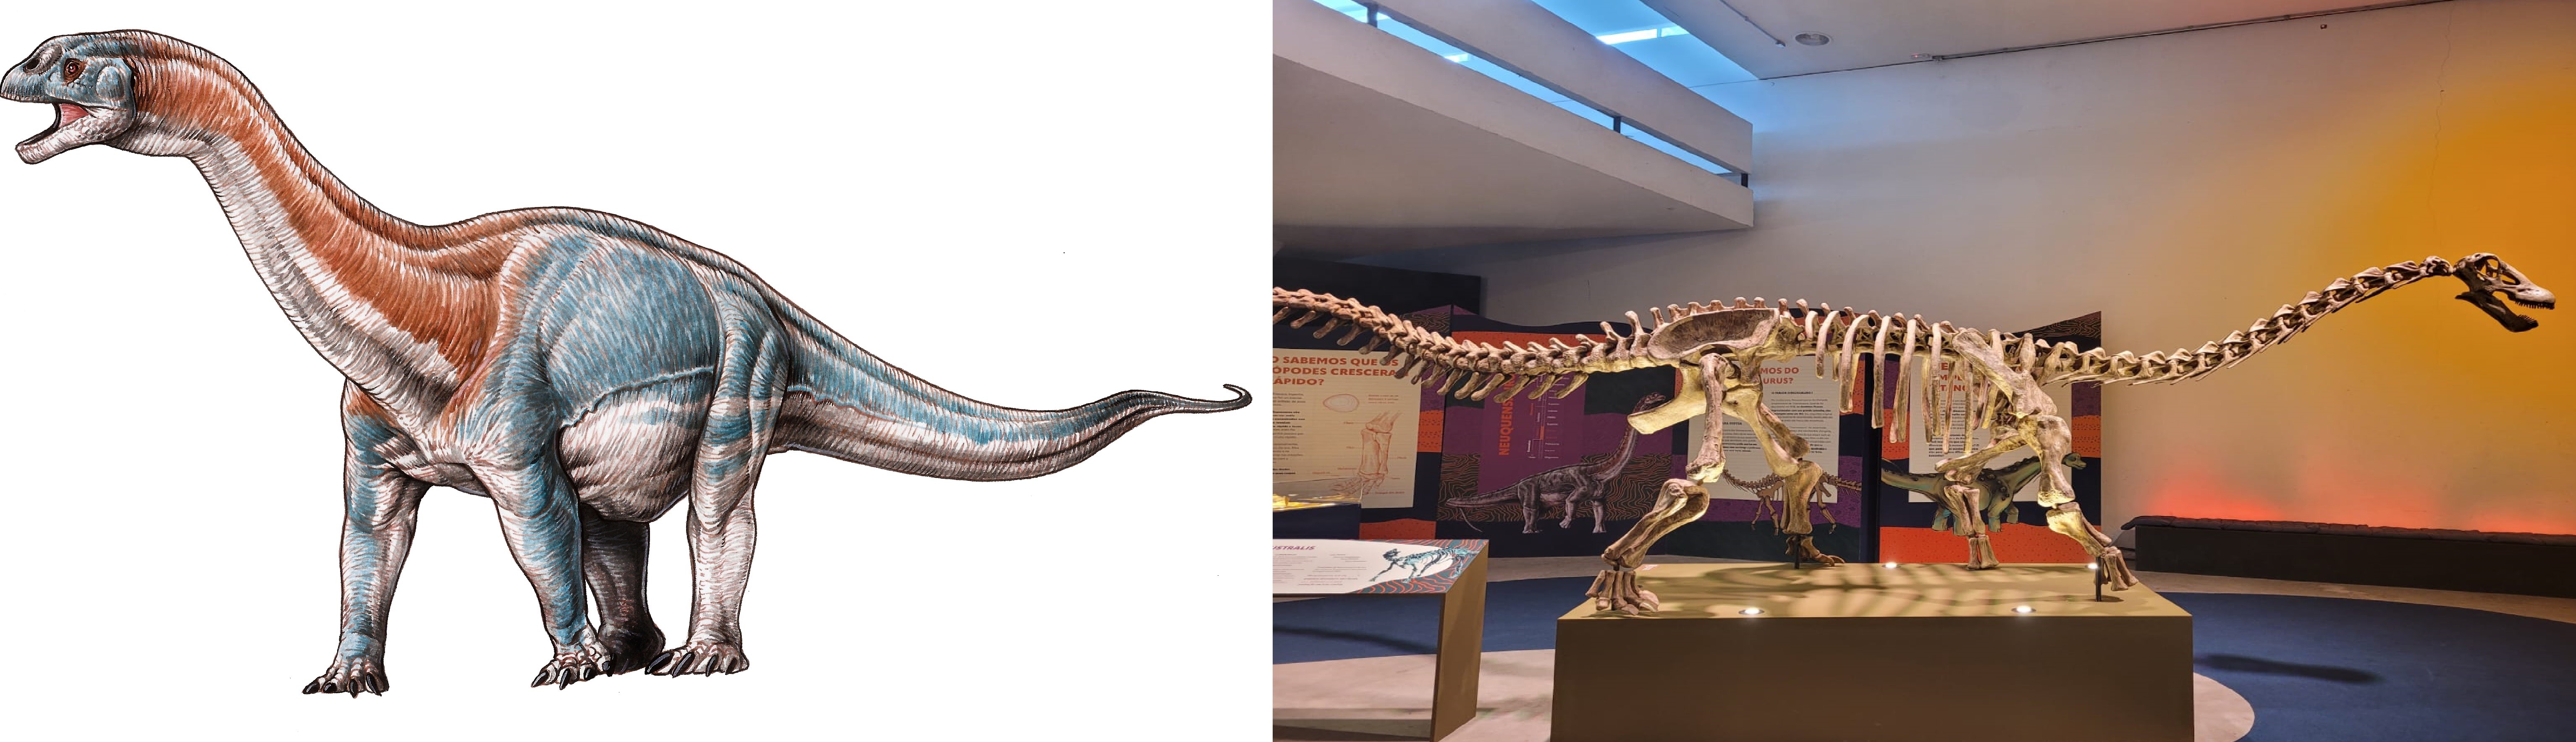 À esquerda uma representação artística de como seria o dinossauro, e à direita a sua réplica na exposição no Pq.Ibirapuera  (Foto: Divulgação/ Midiorama/ Foto: Laura Moraes)